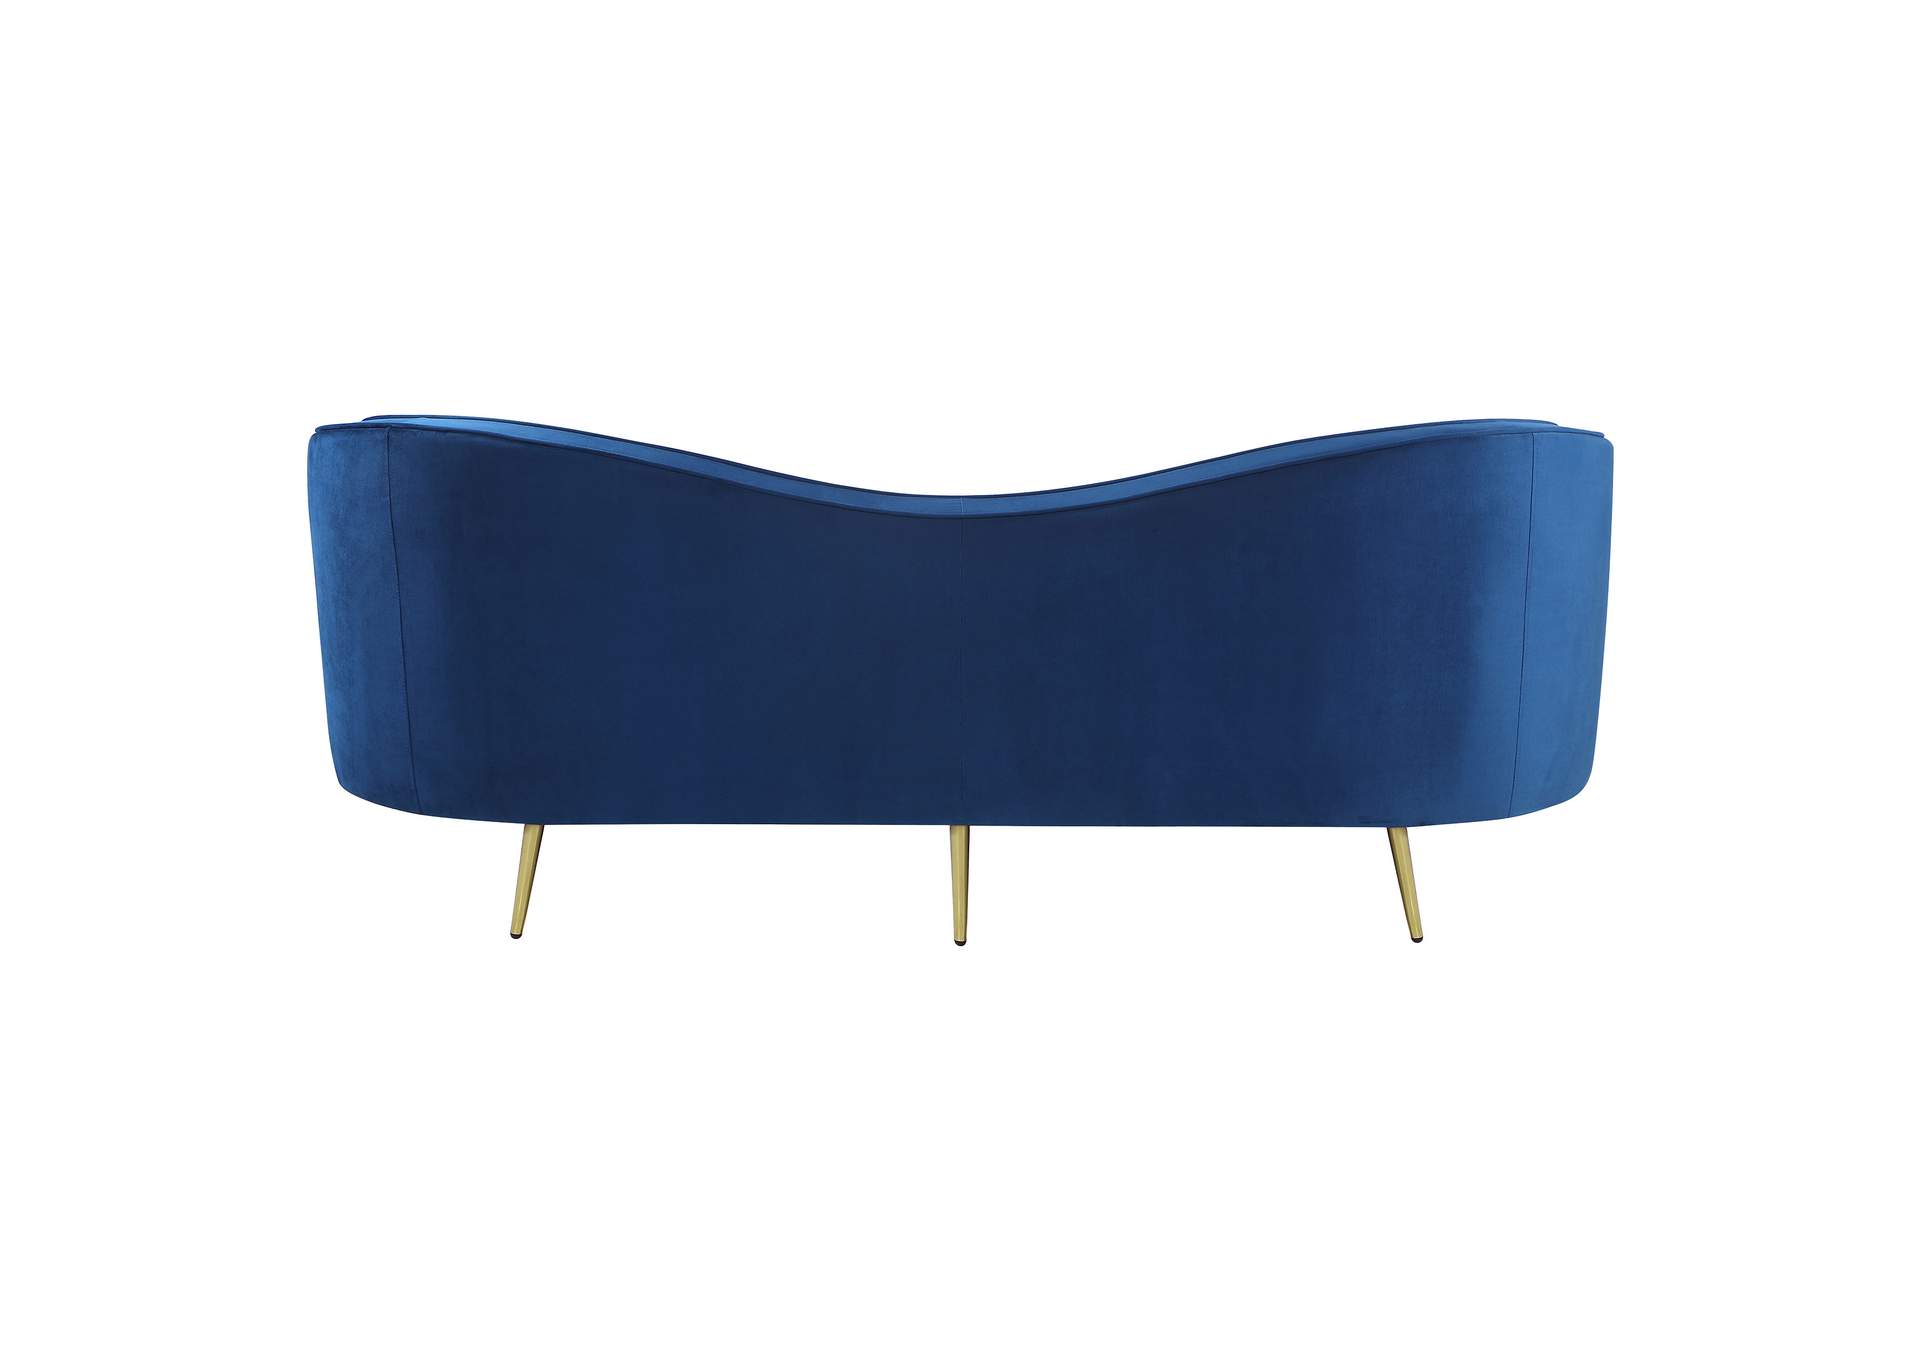 Sophia Upholstered Camel Back Sofa Blue,Coaster Furniture